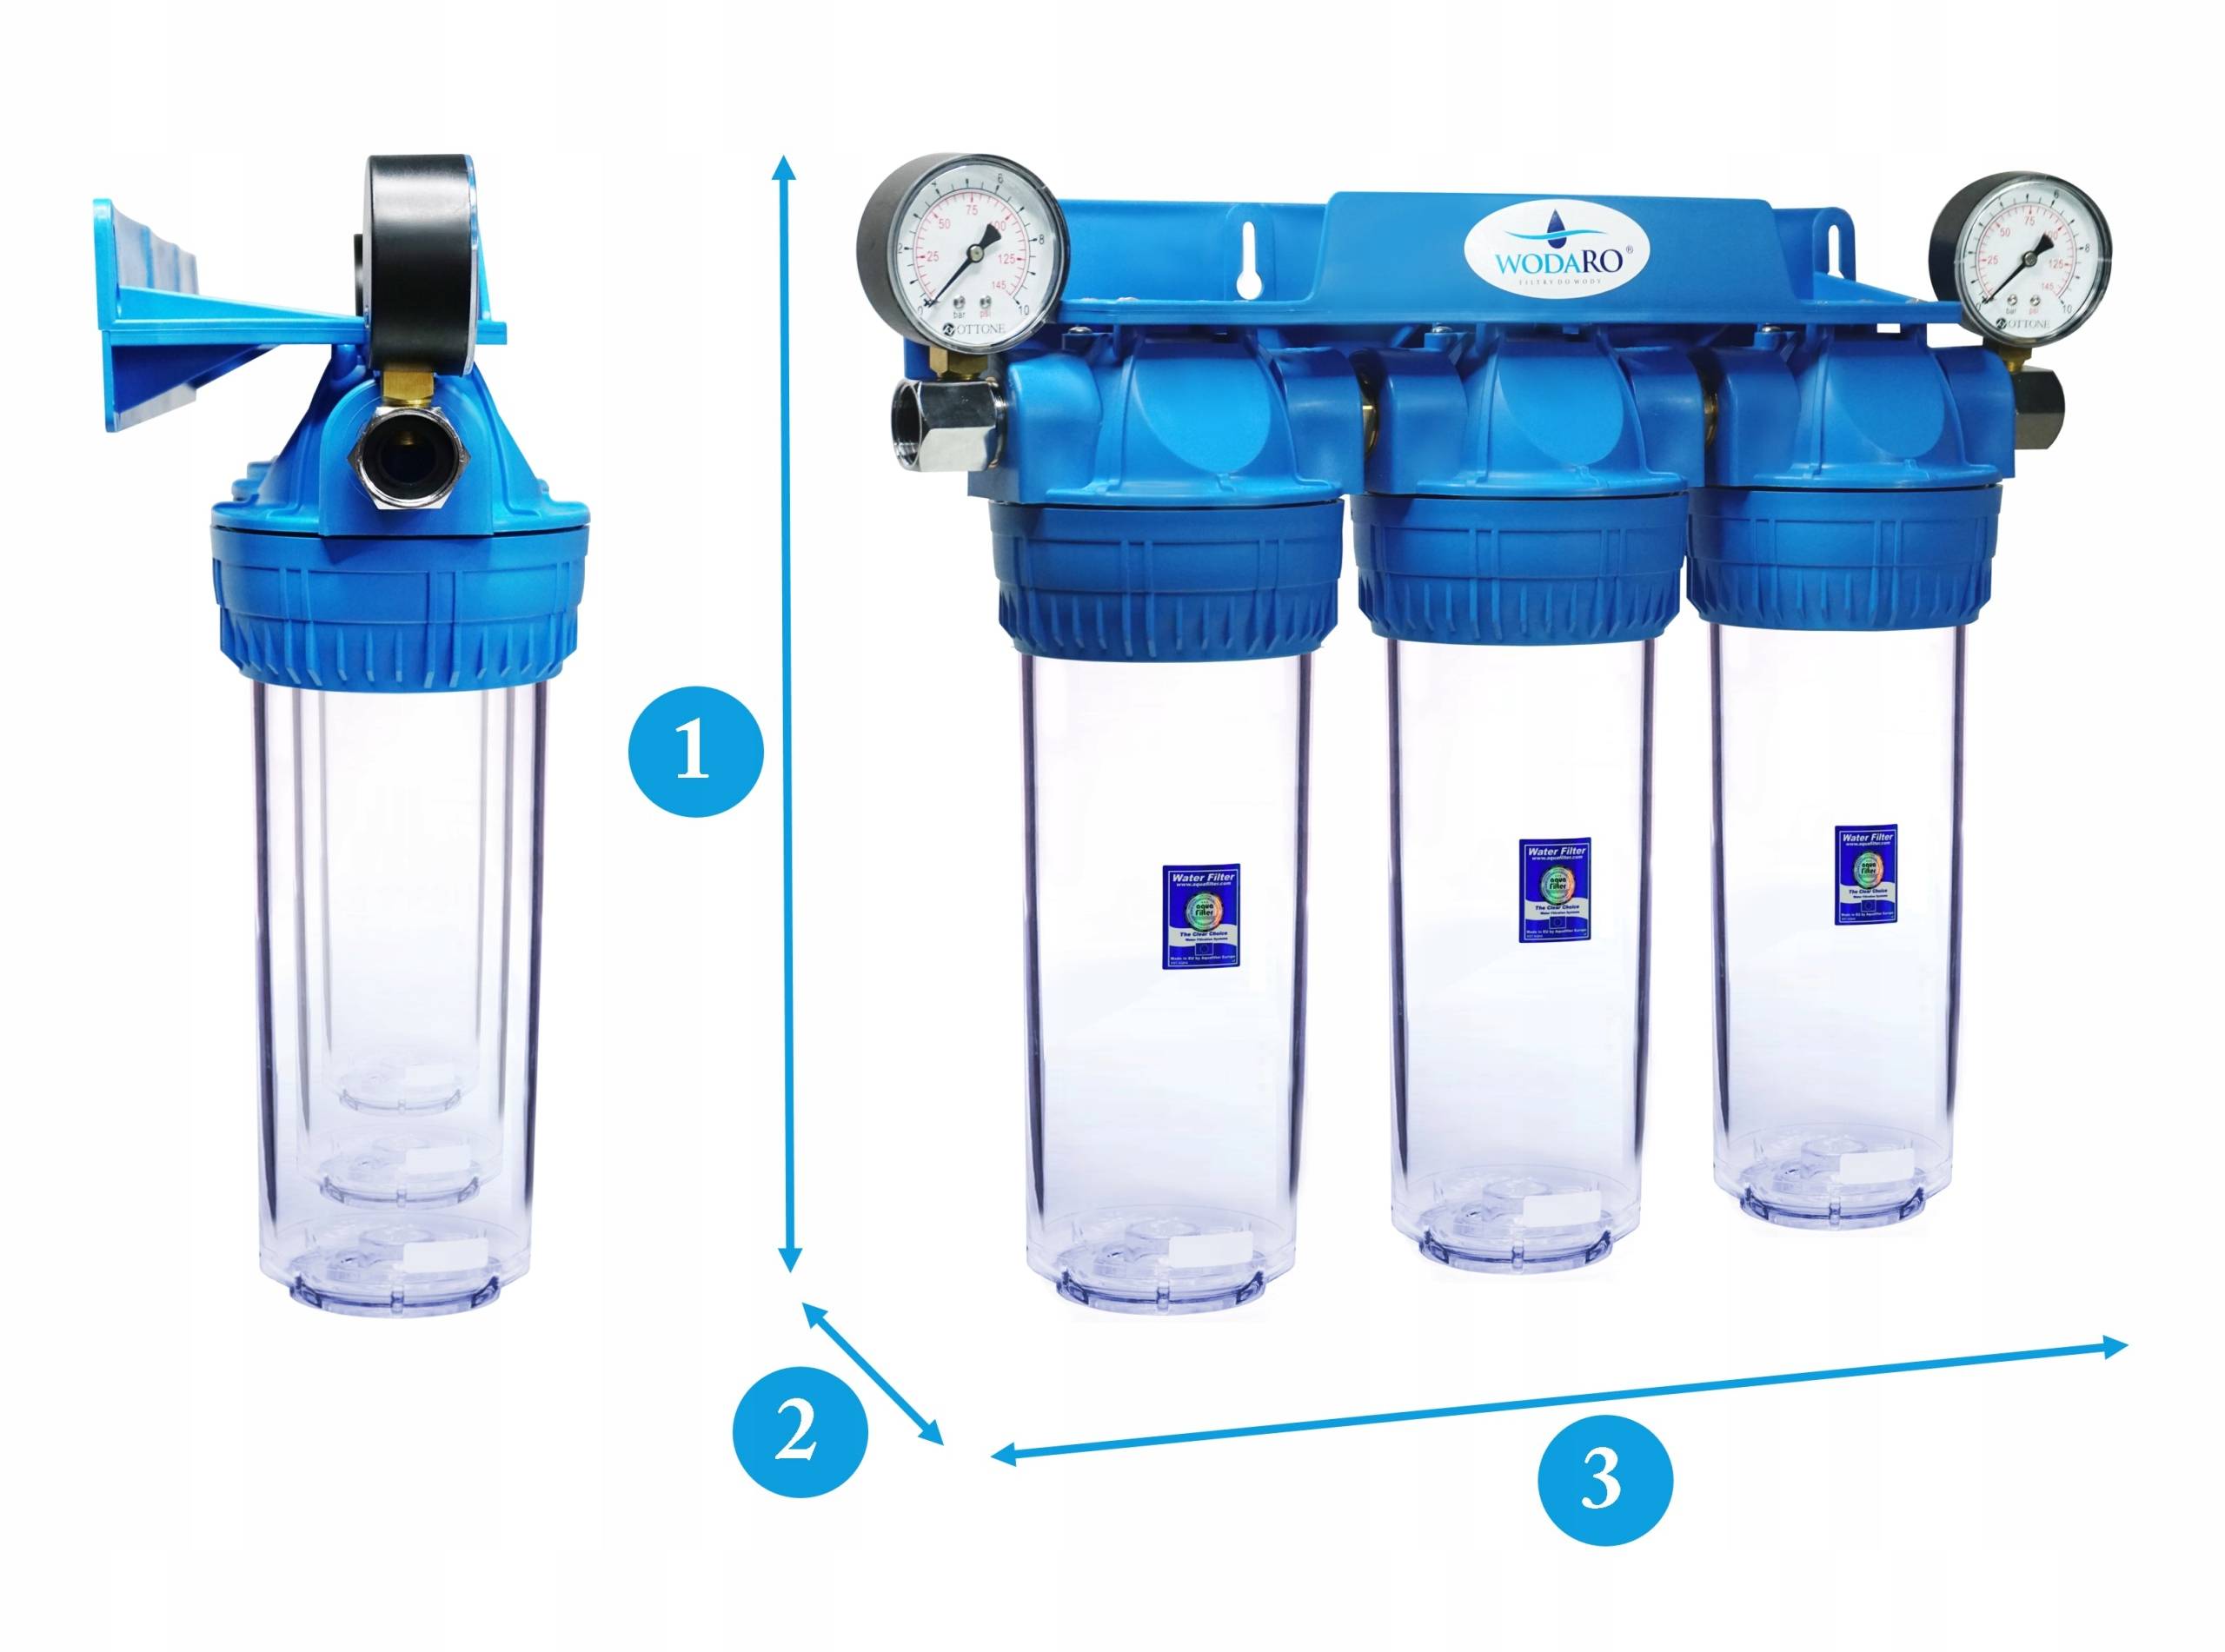 Фильтры воды бери фильтр. 3-Х ступенчатый магистральный фильтр для воды. Трехступенчатый магистральный фильтр 103. Фильтр для воды 3 ступени. Магистральная система очистки воды из 3 фильтров.